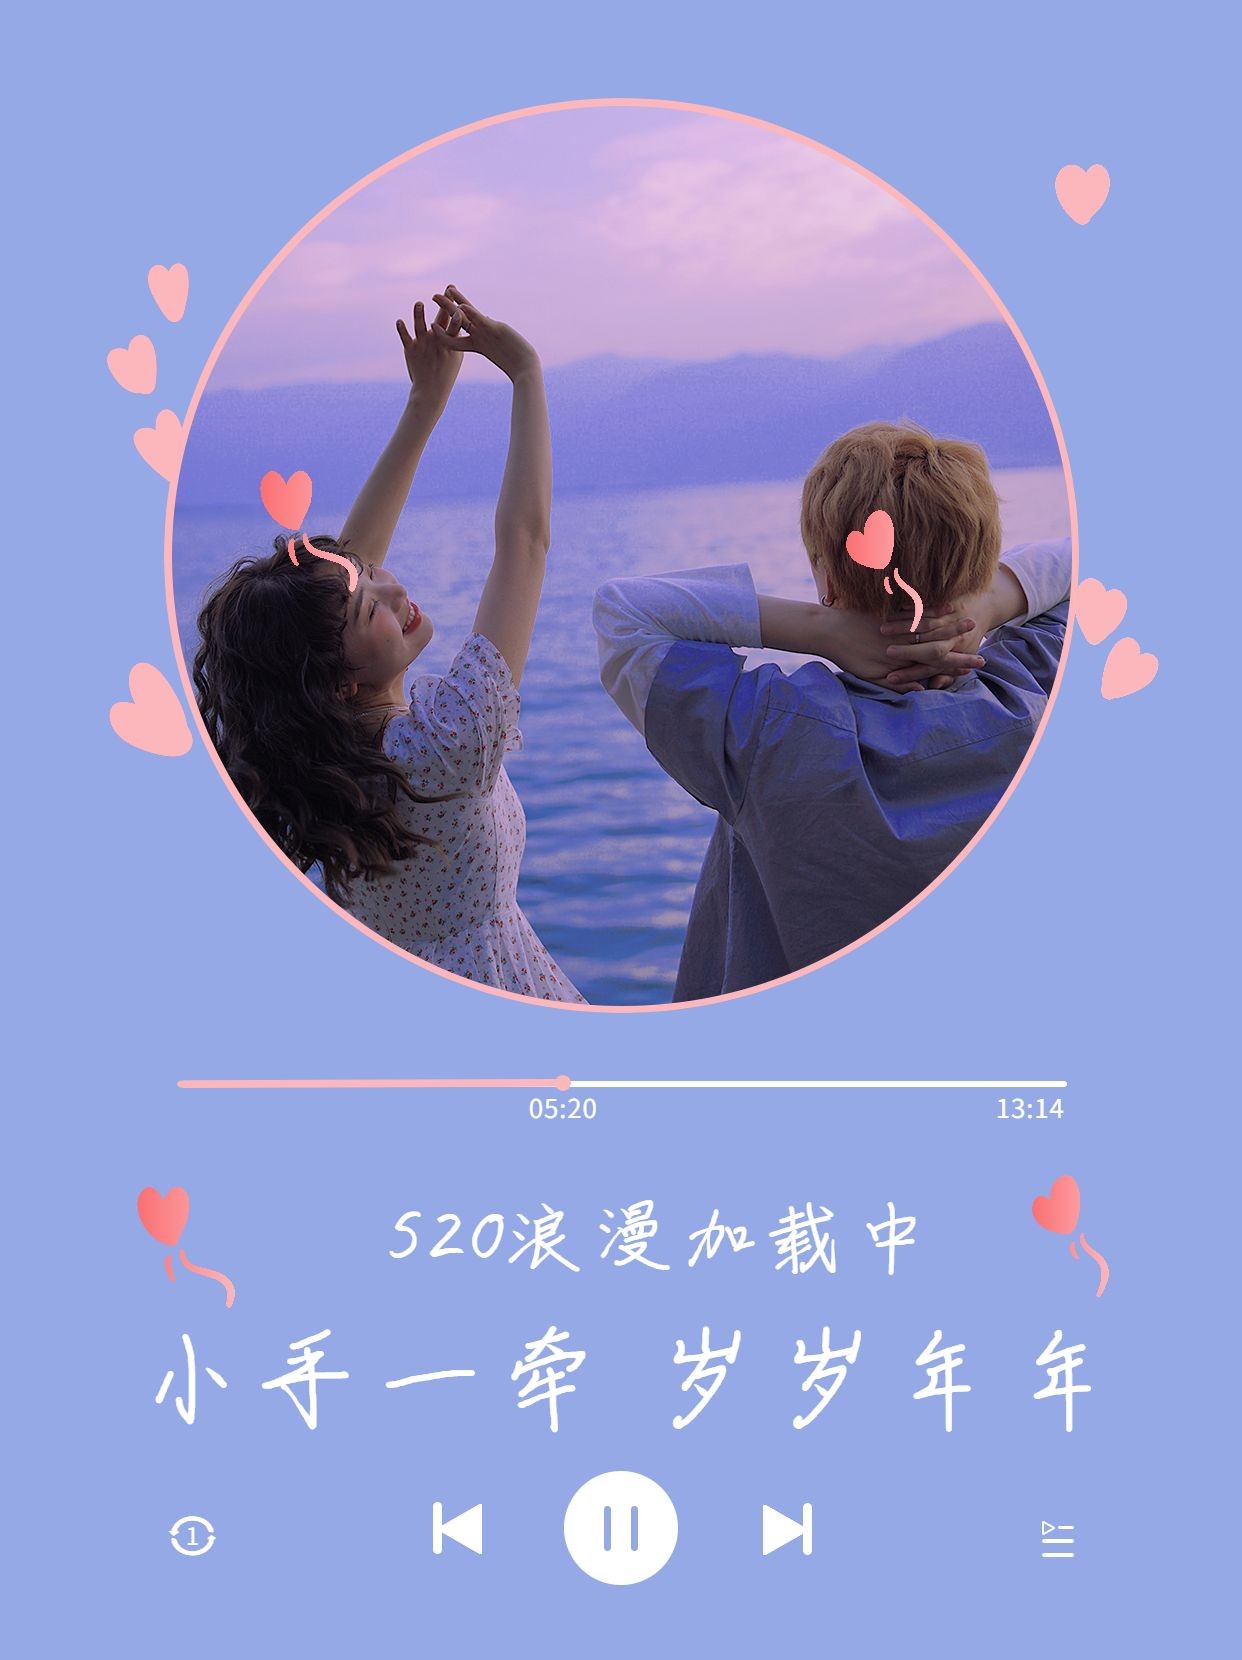 秀恩爱/官宣520情人节创意晒照小红书模板预览效果